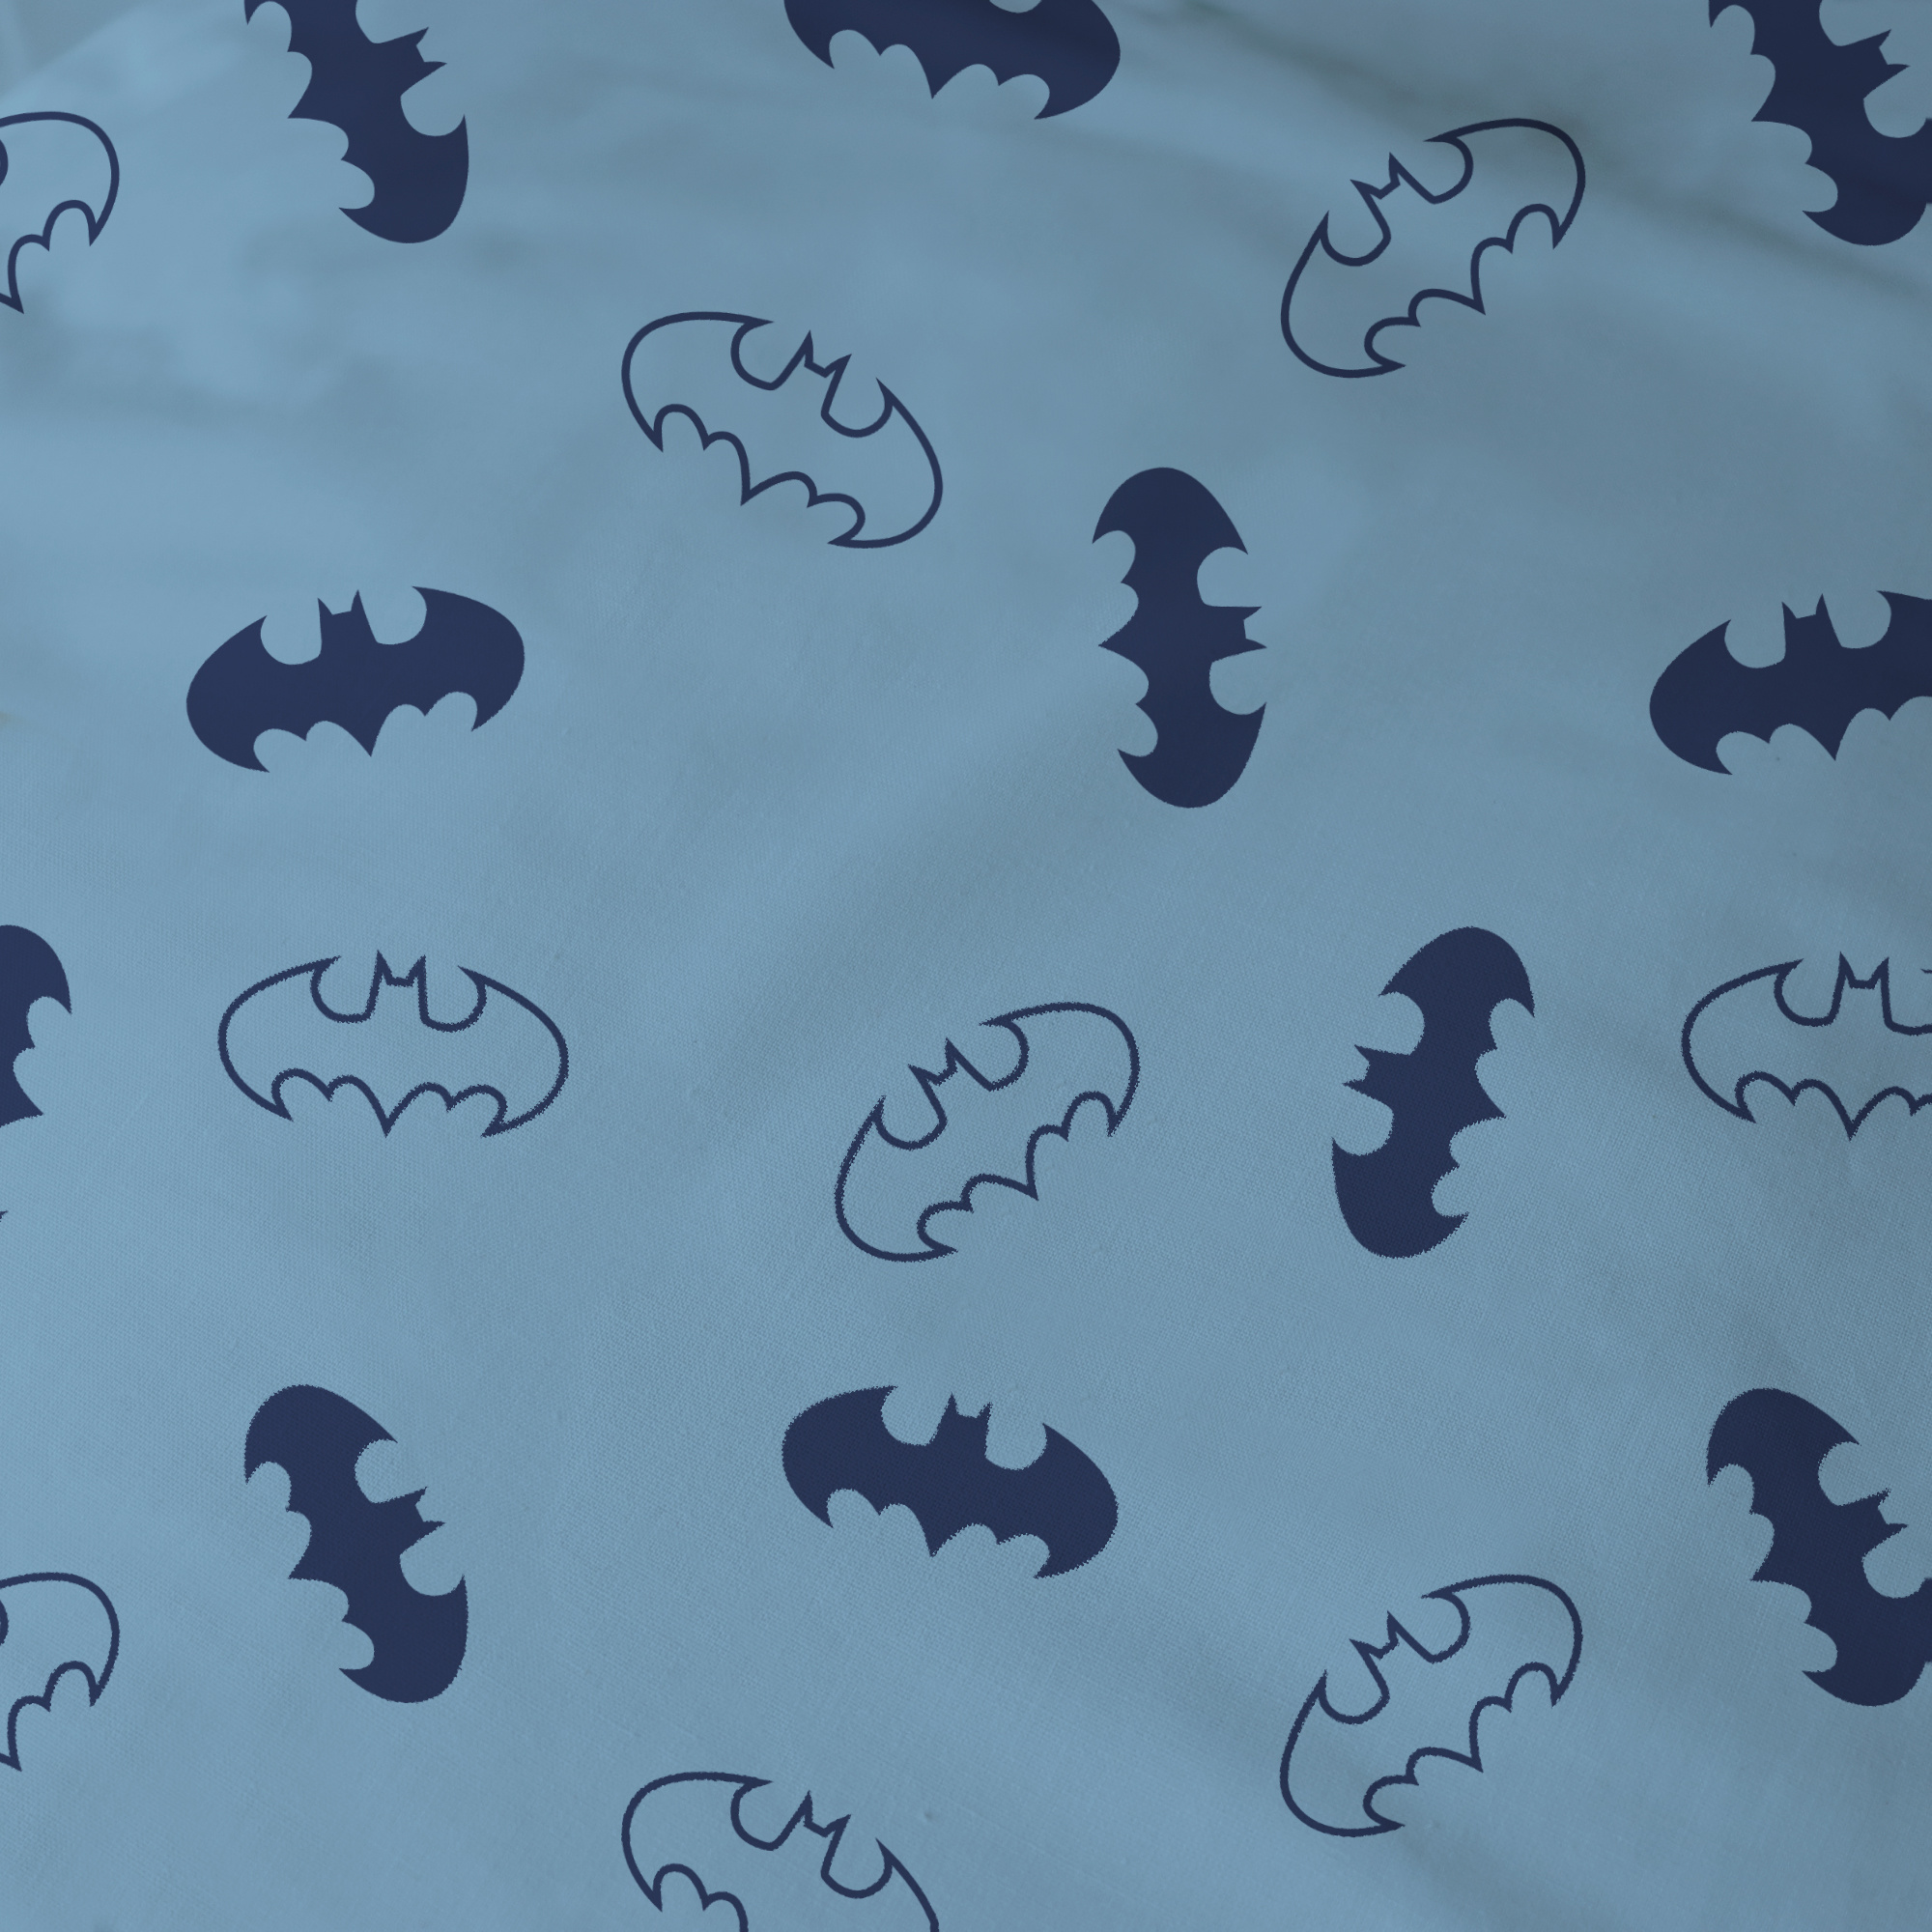 Batman Duvet cover Iconic - Lits Jumeax - 240 x 220 cm - Cotton